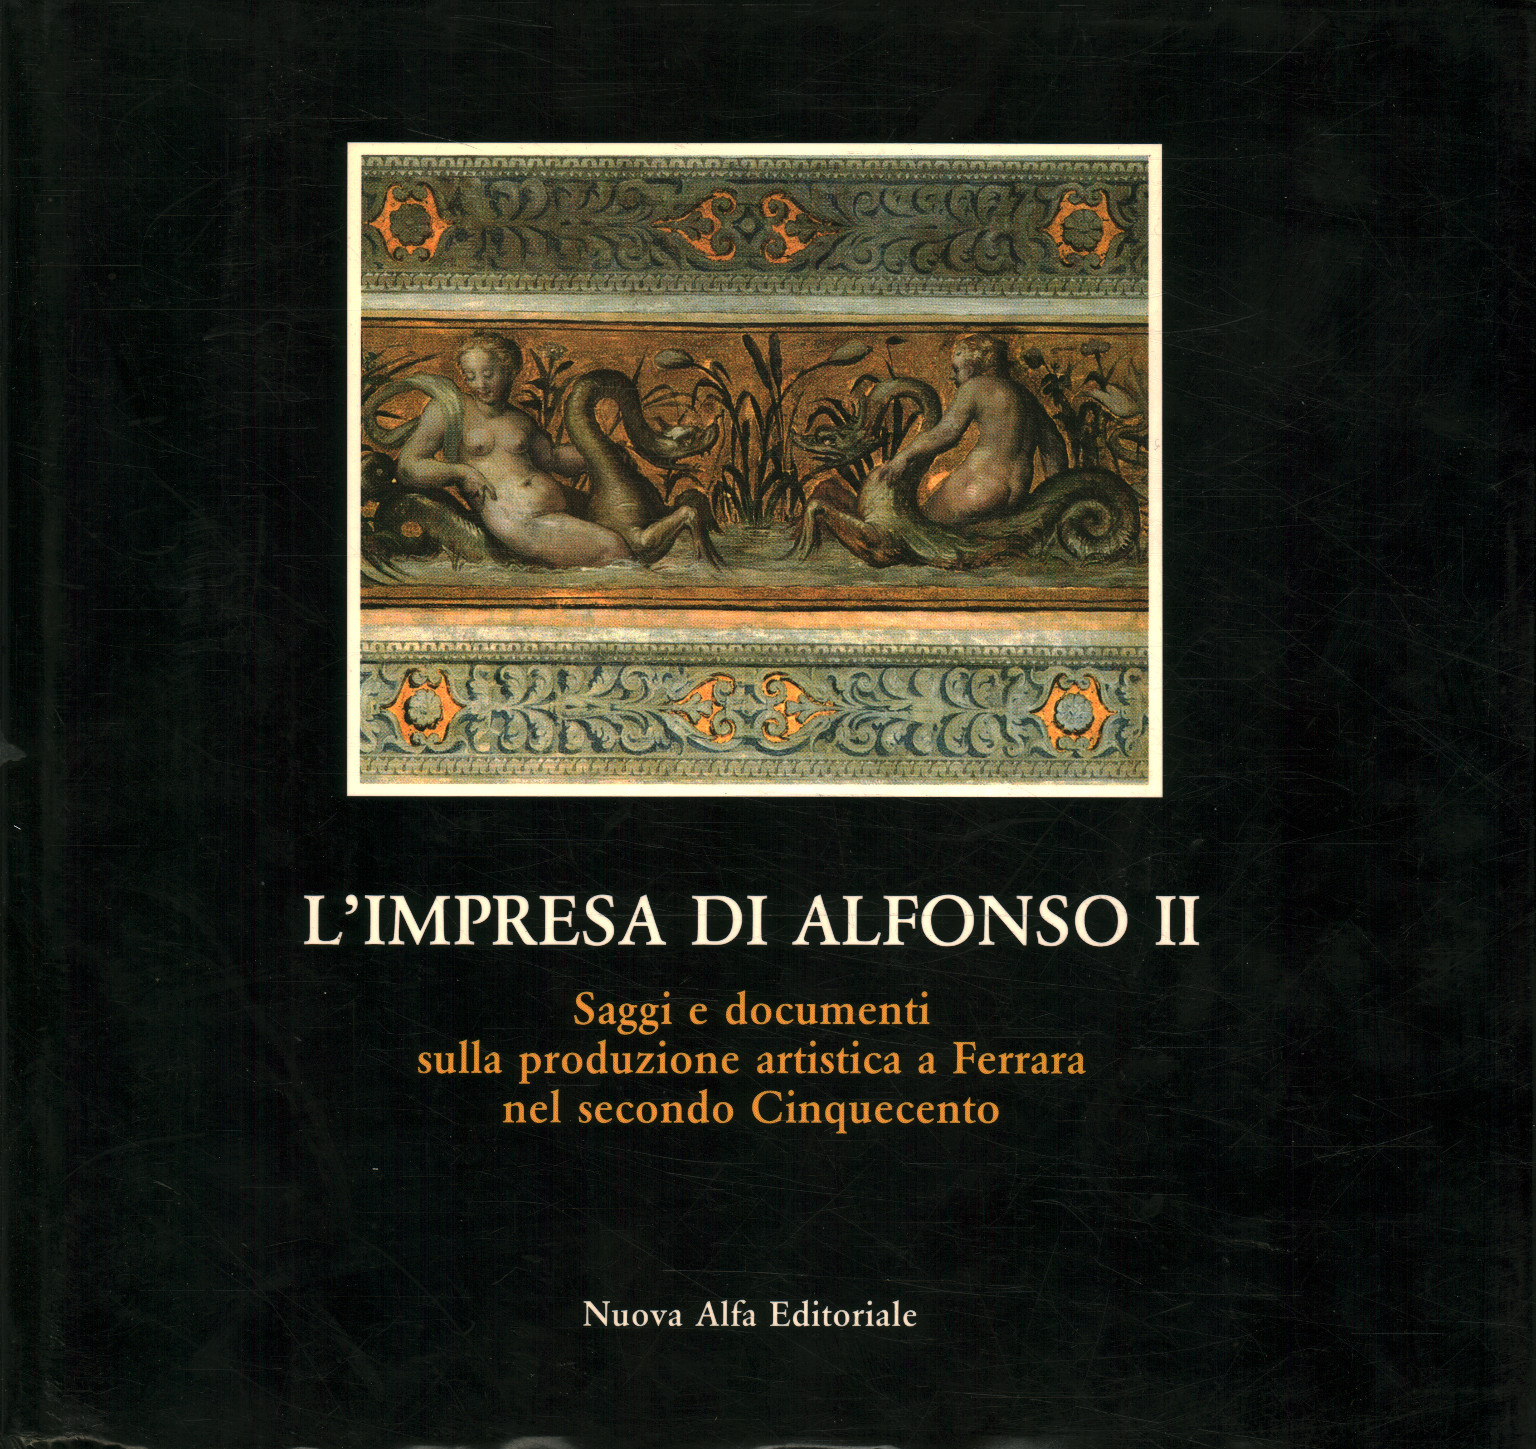 Das Unternehmen von Alfonso II